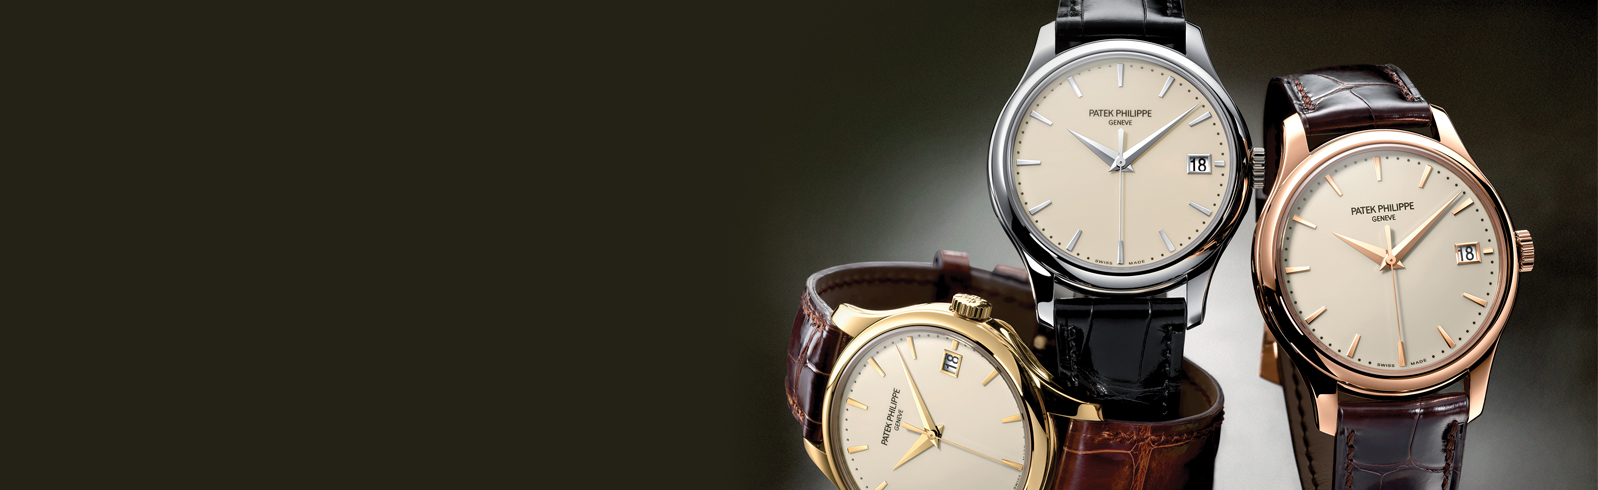 Patek Philippe Calatrava - Chiếc đồng hồ "quý tộc" dành cho các quý ông